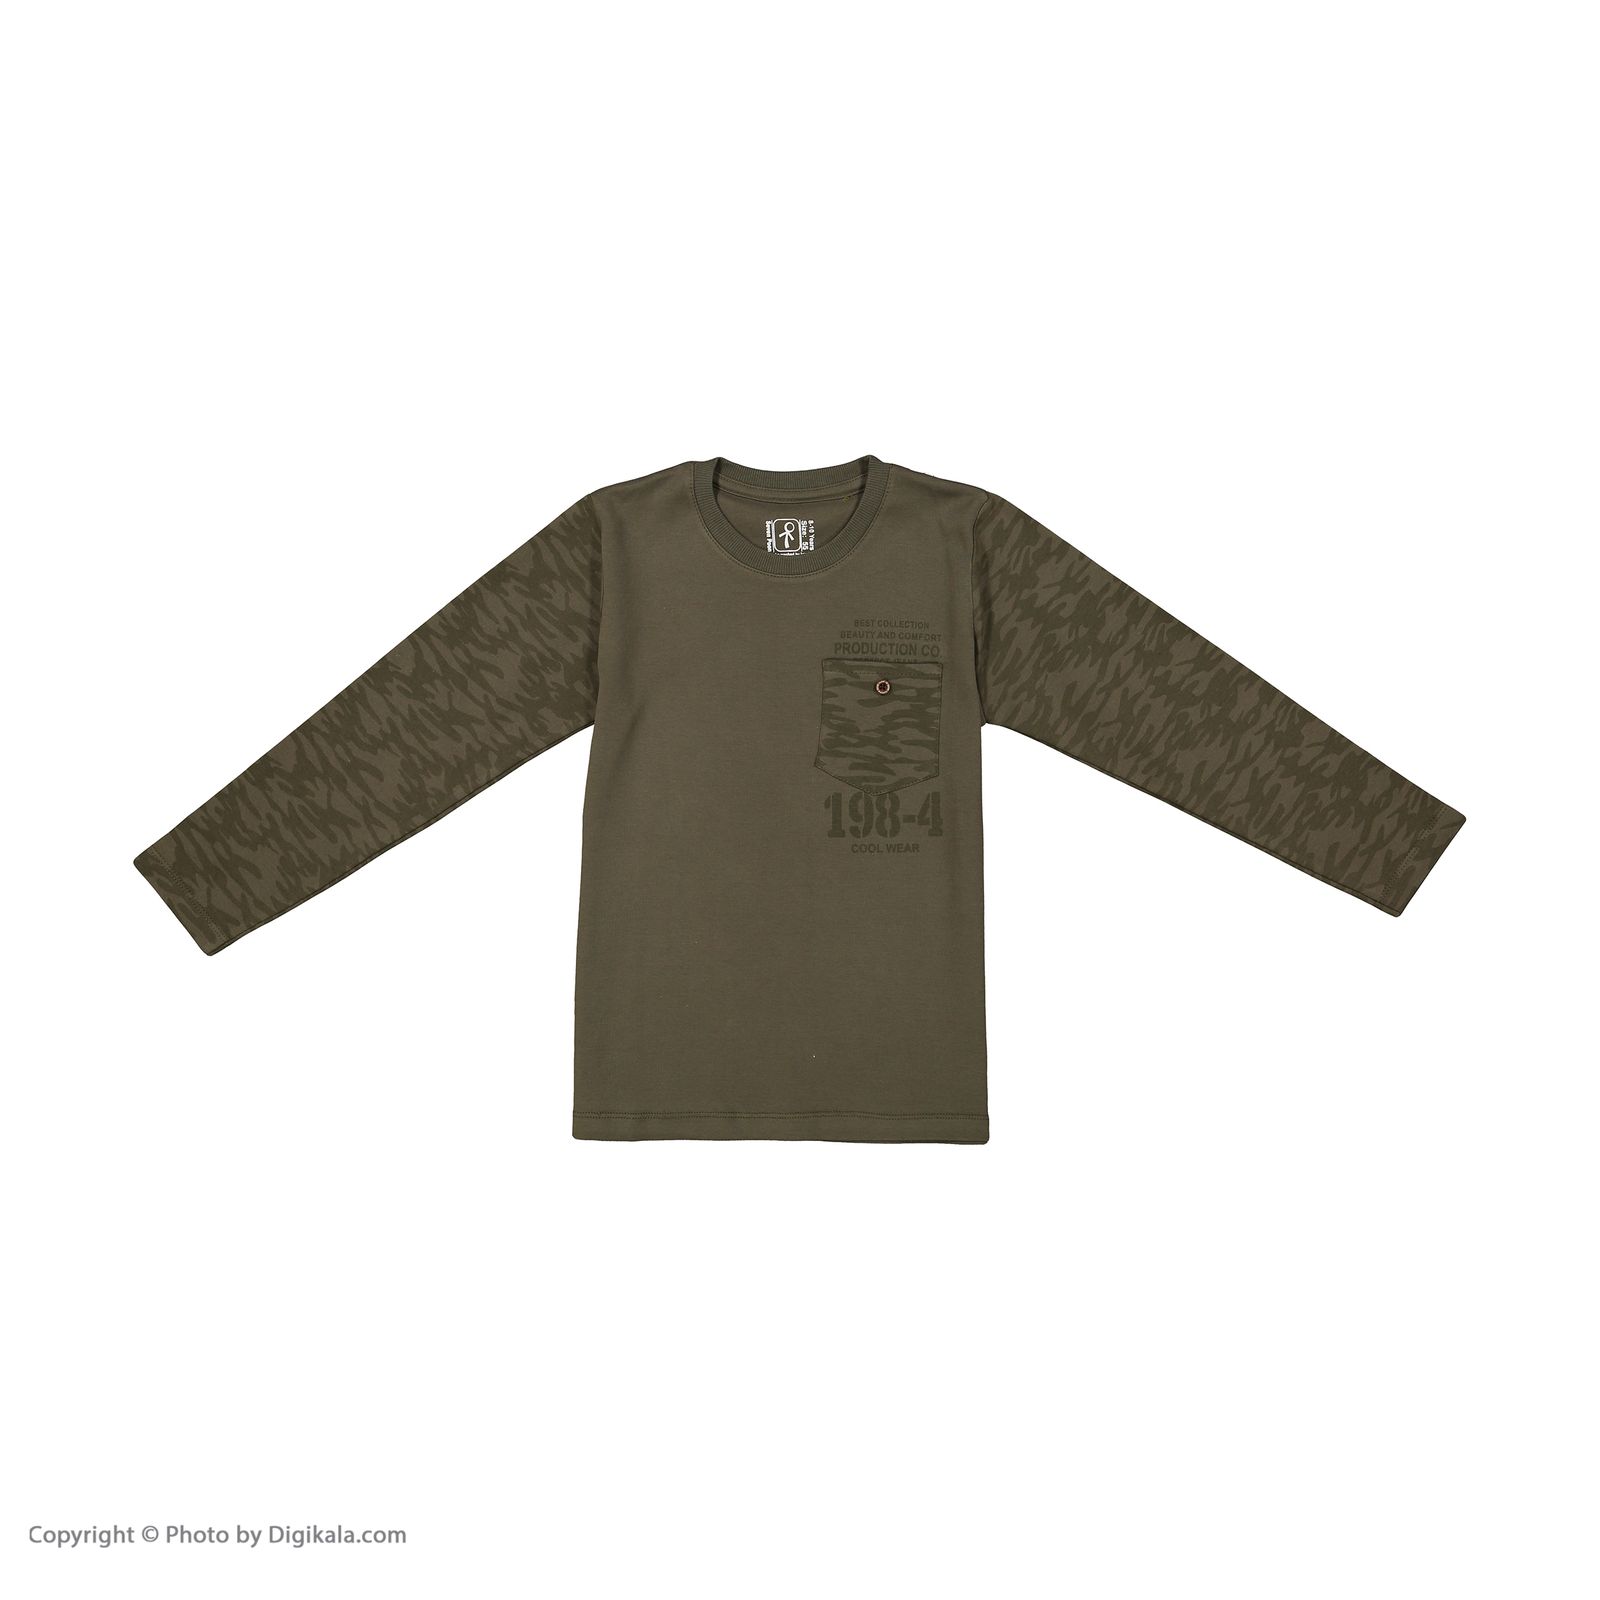 تی شرت پسرانه سون پون مدل 1391400-49 -  - 2